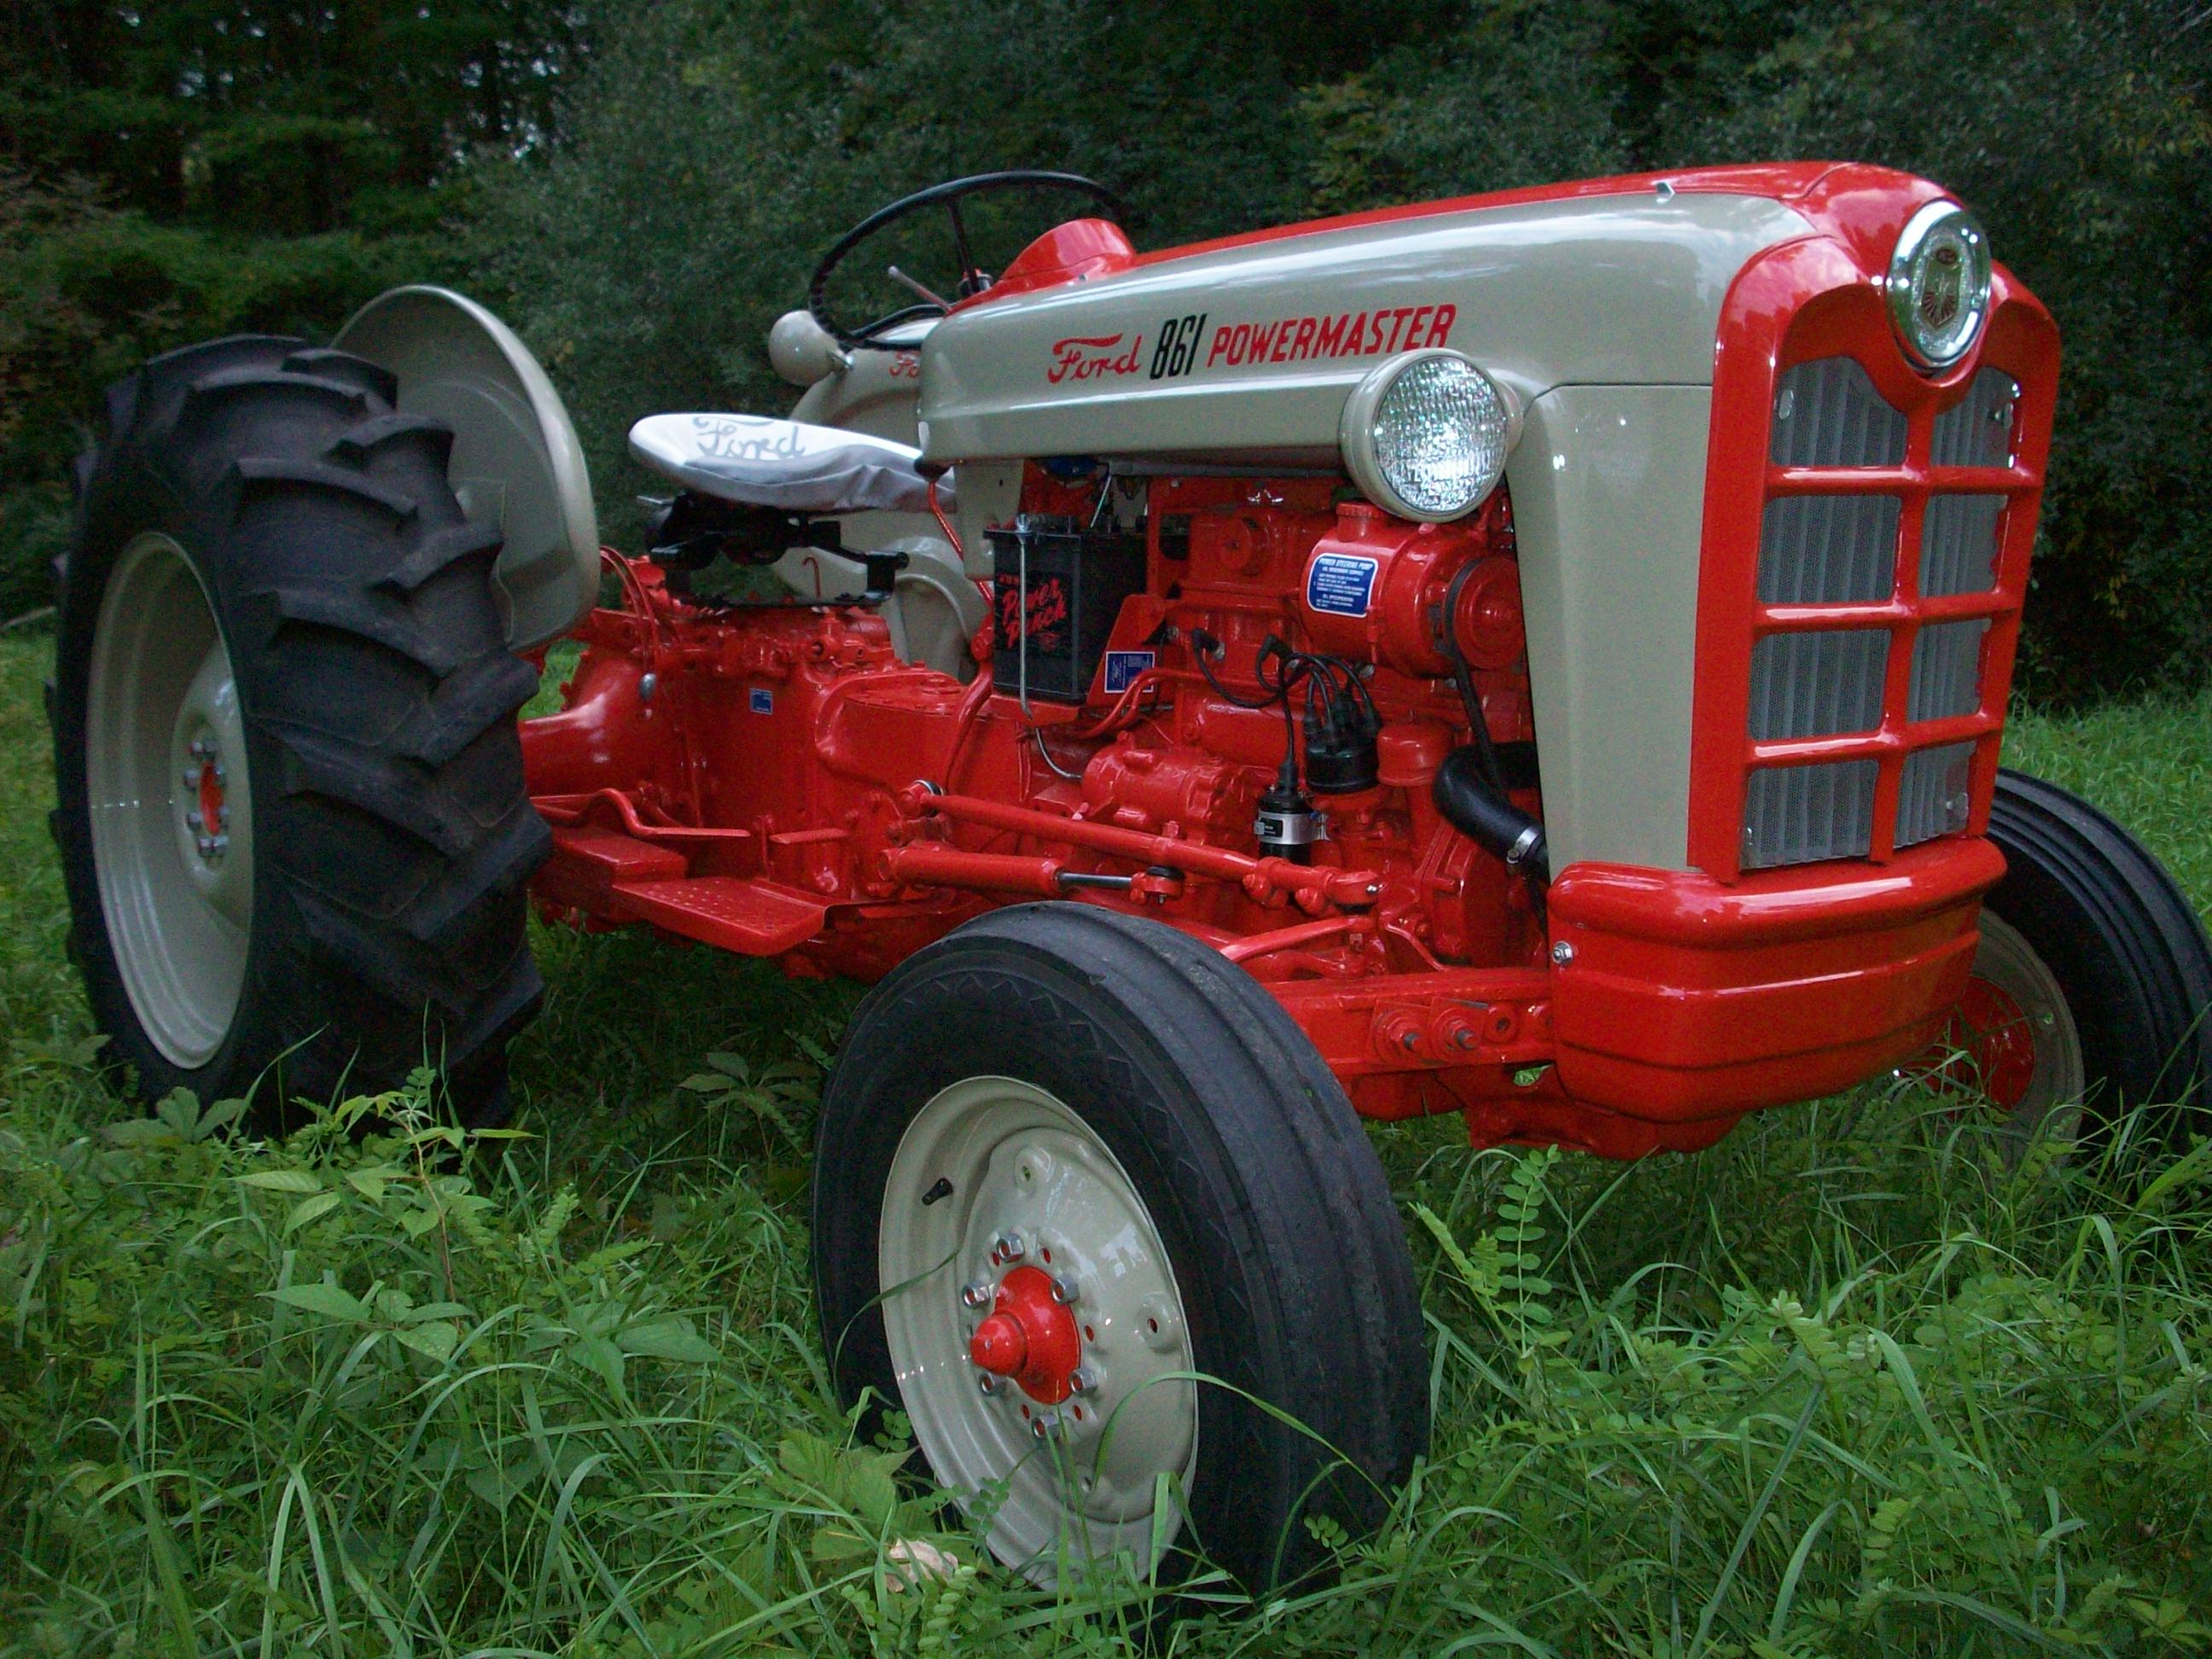 Ford 861 powermaster diesel tractor #7